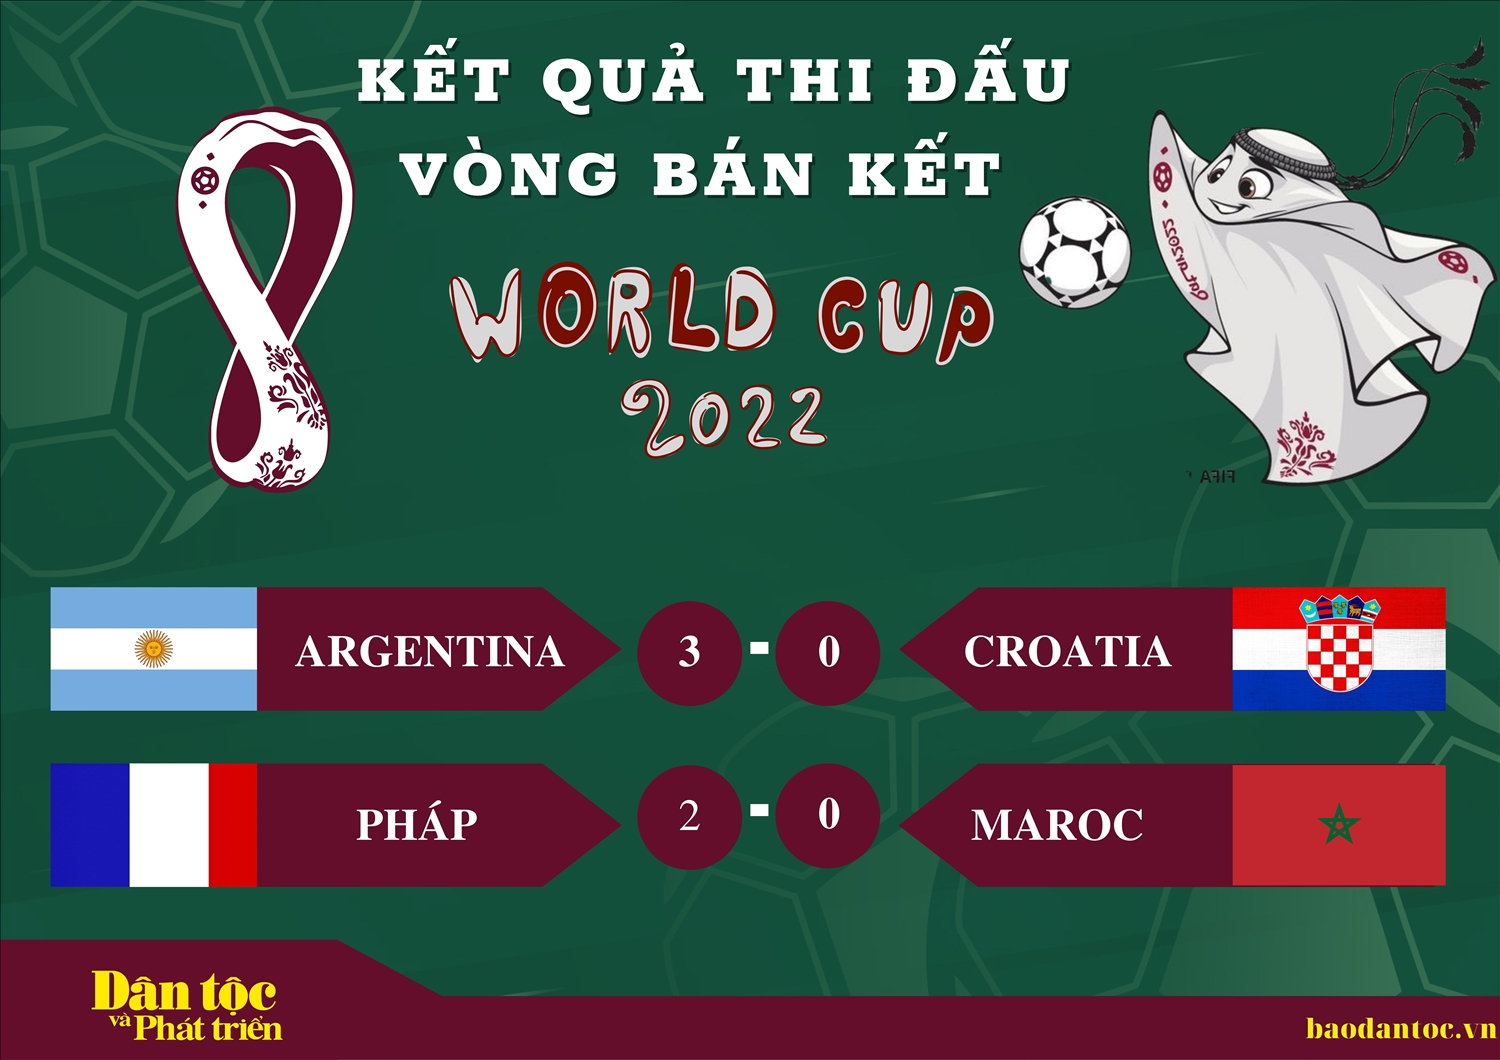 Kết quả thi đấu vòng bán kết World Cup 2022 ngày 15/12